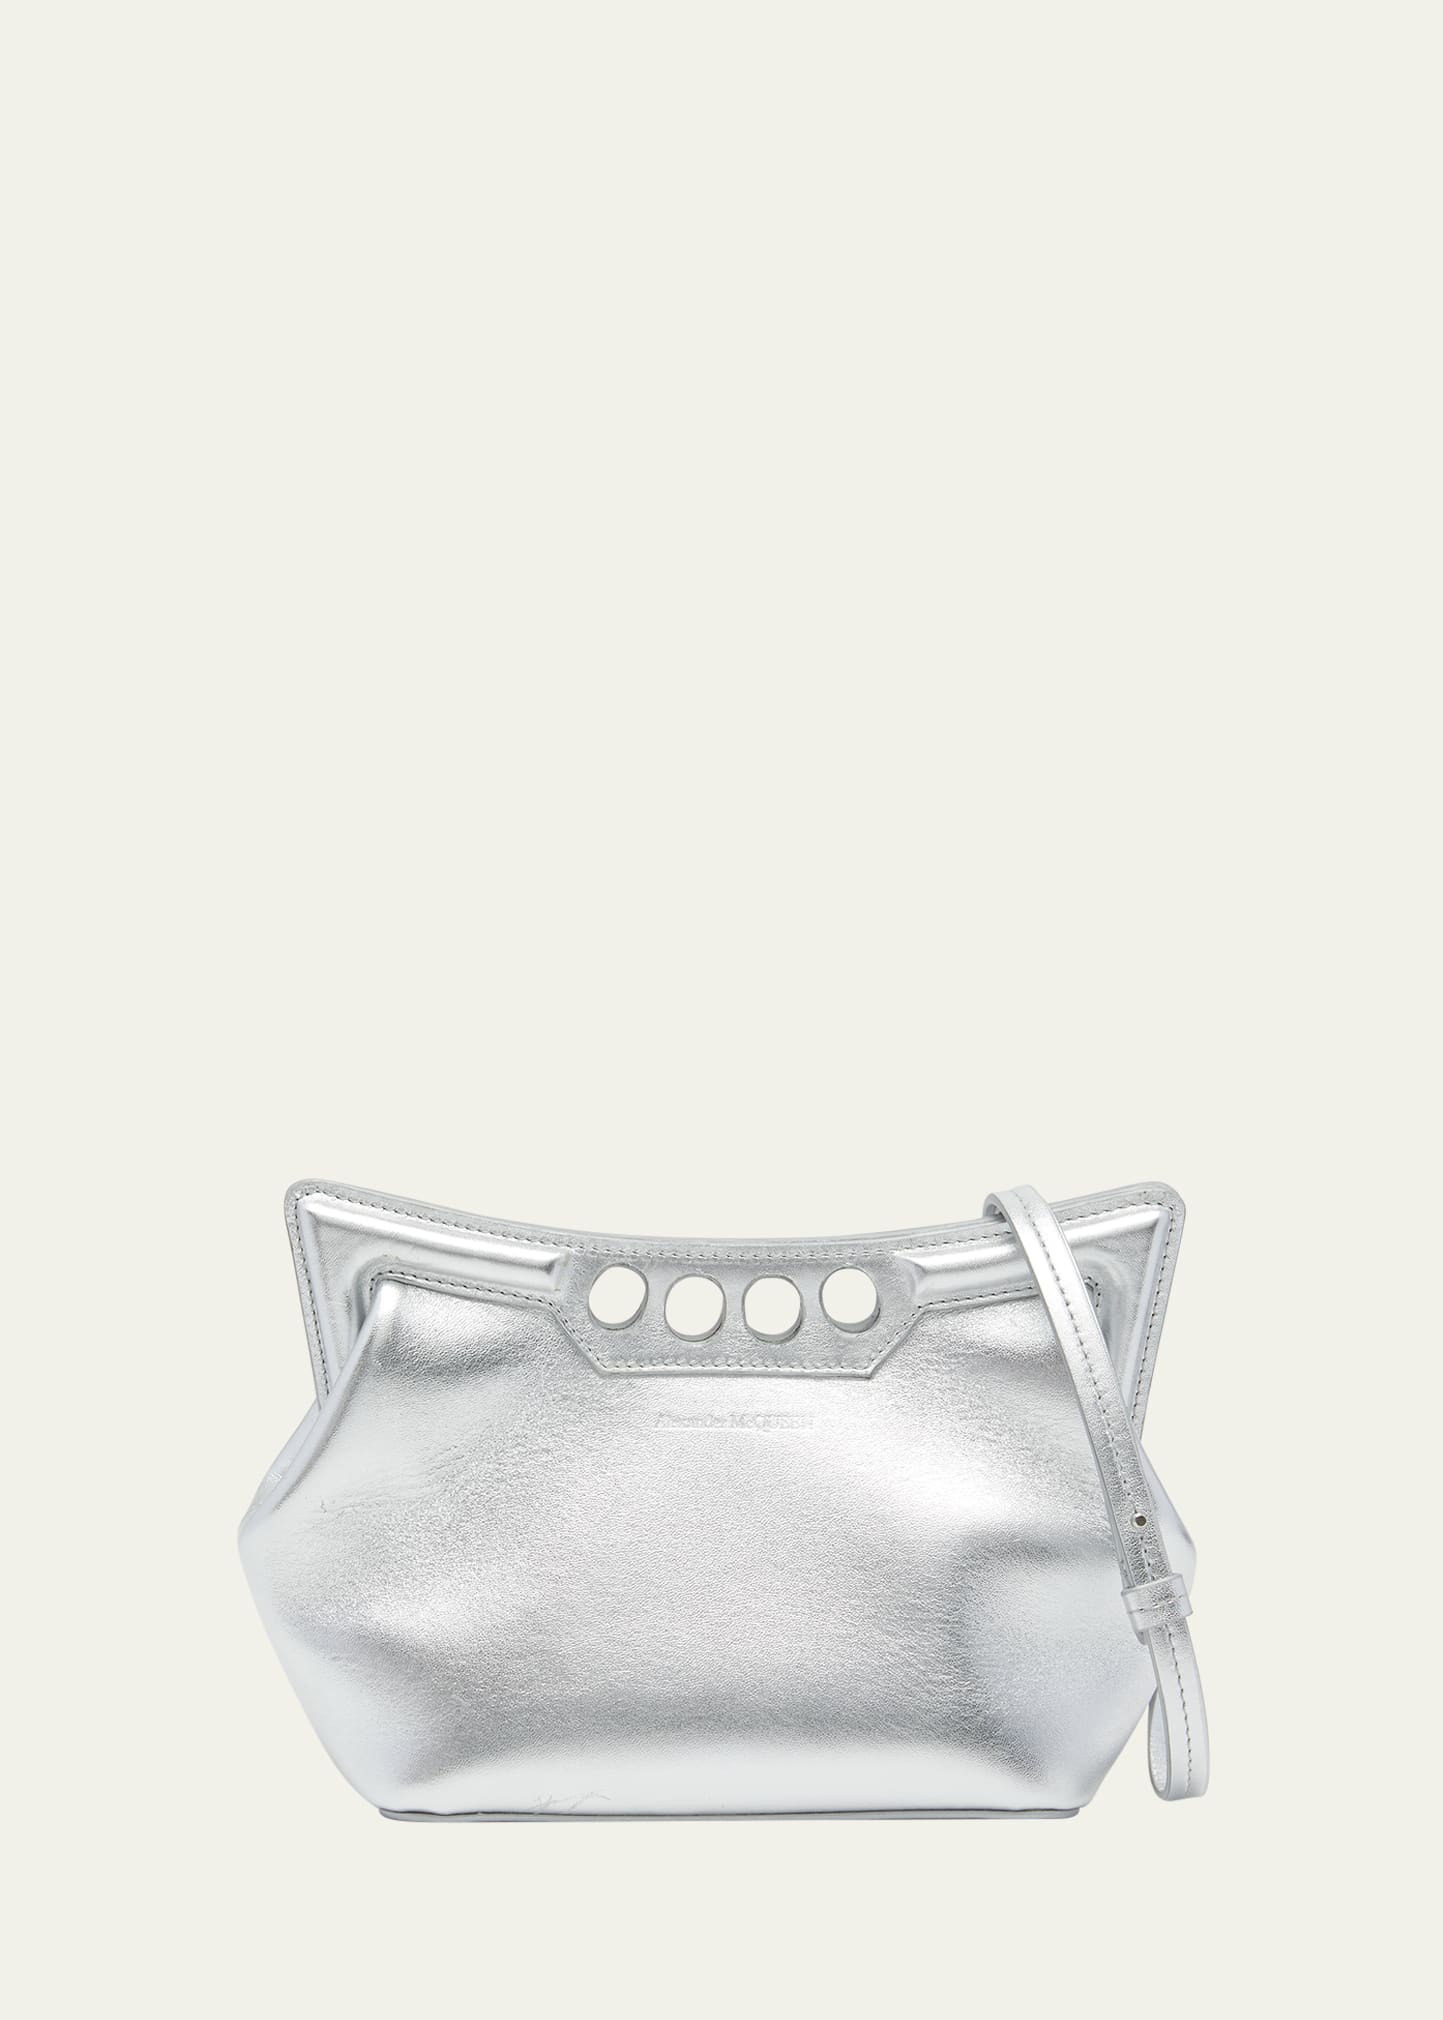 The Peak Mini Metallic Shoulder Bag